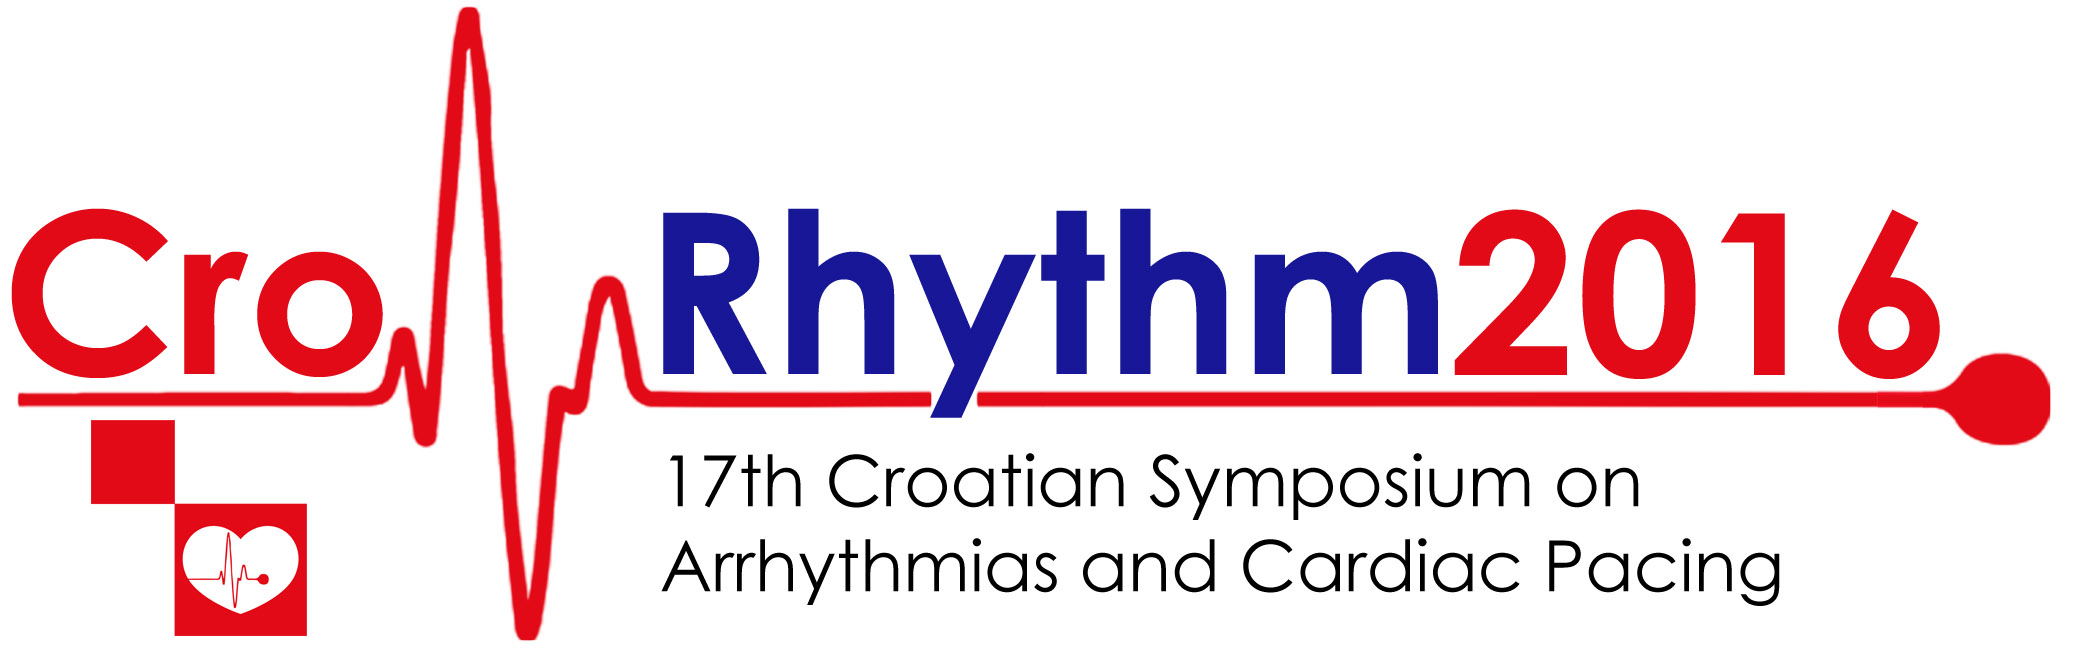 CroRhythm2016 – 1. sastanak kardioloških medicinskih sestara o aritmijama i elektrostimulaciji srca – Finalni program